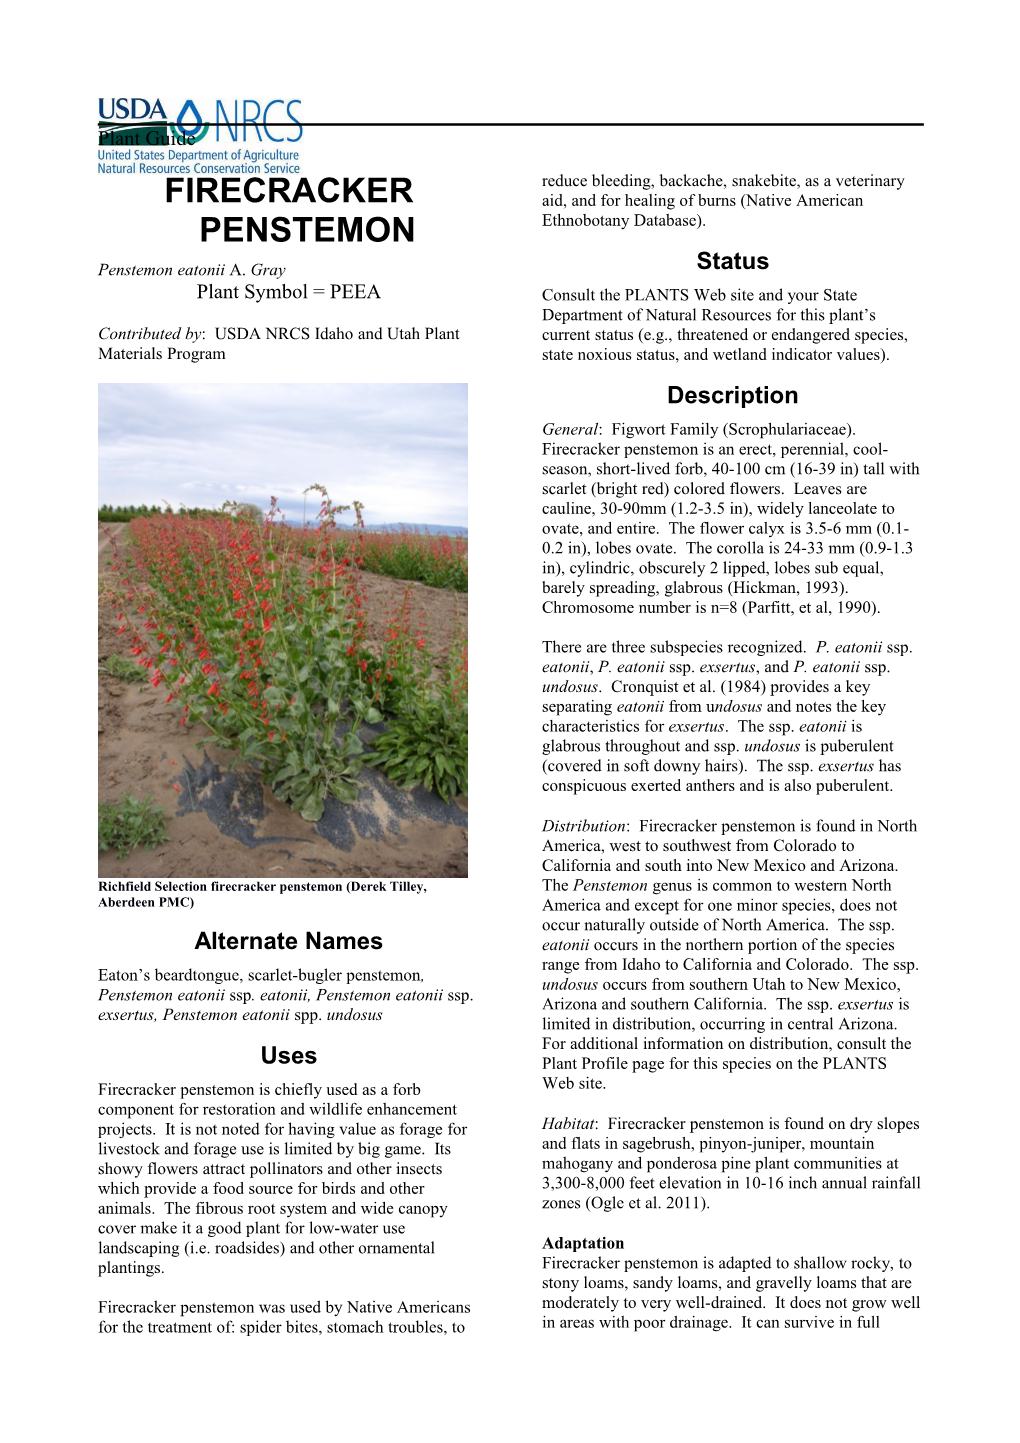 Plant Guide for Firecracker Penstemon